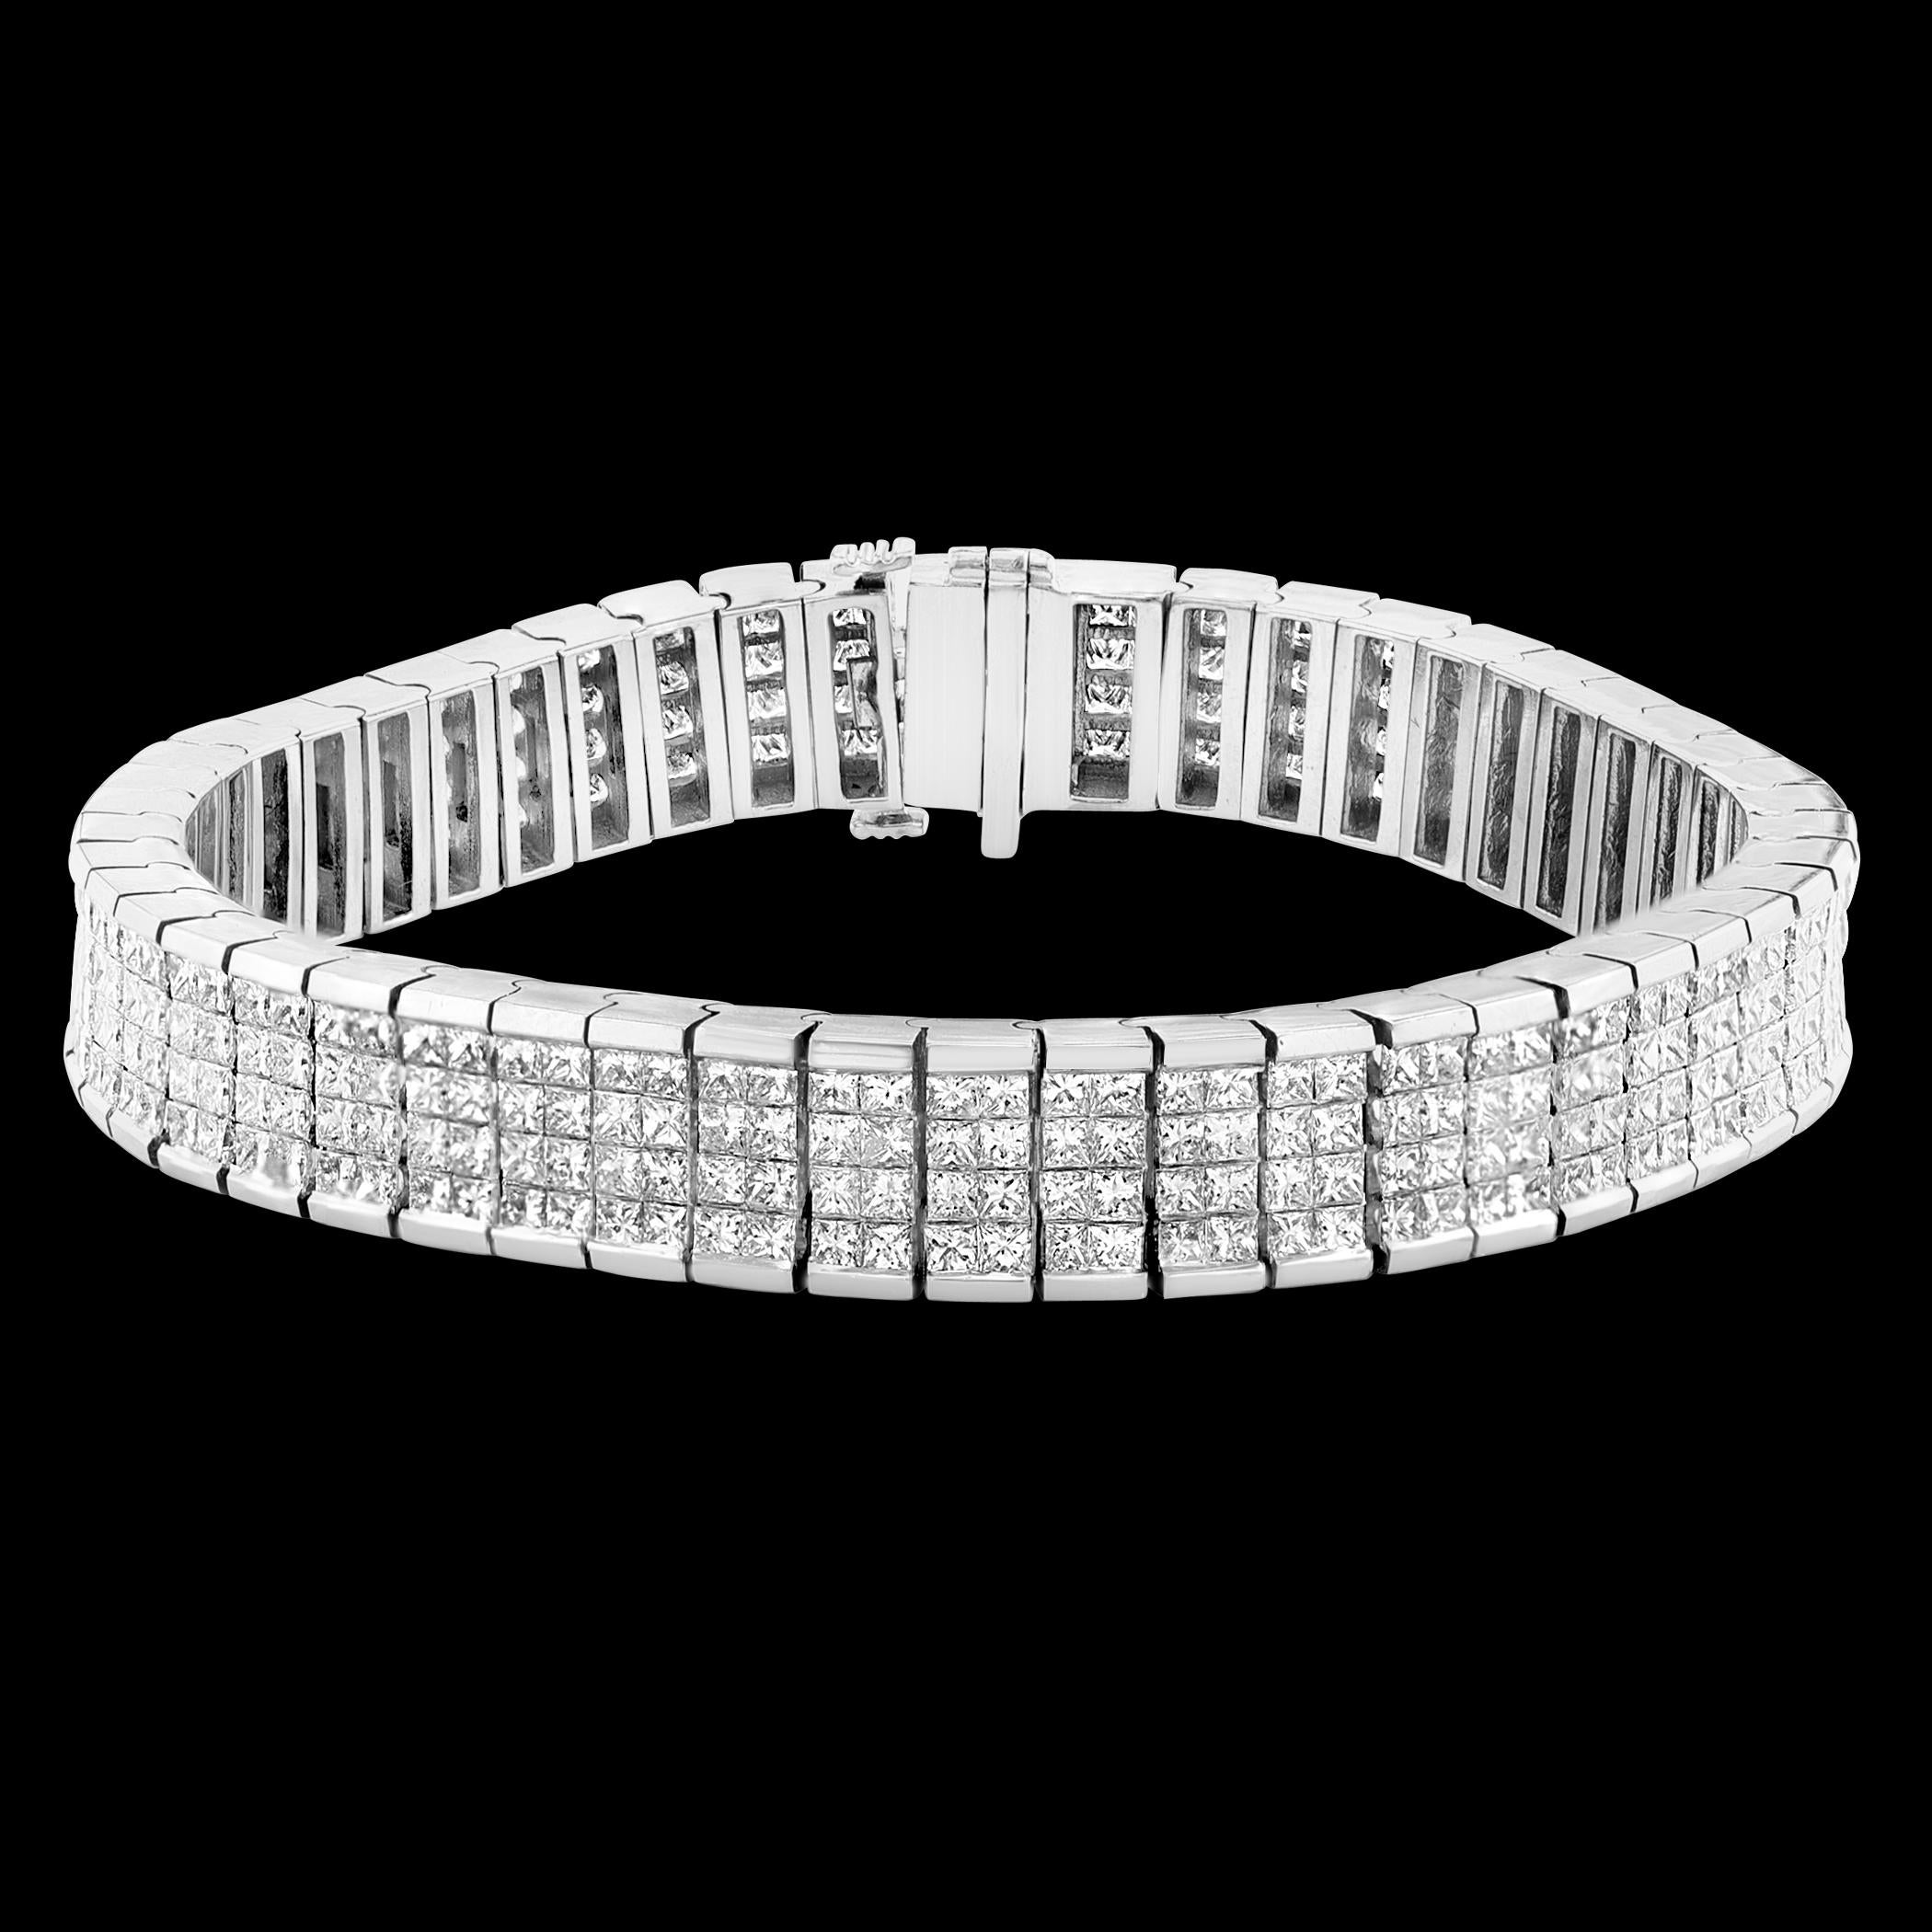 
Ein klassisches Tennisarmband auf einem vierreihigen Diamanten im Prinzess-Schliff mit einem Gewicht von 24 Karat
WEISSE, GLÄNZENDE, NATÜRLICHE DIAMANTEN OHNE VEREDELUNG
Es ist 7,3 Zoll lang, 9,3 mm breit und 3,95 mm dick. 
Dies wird perfekt passen